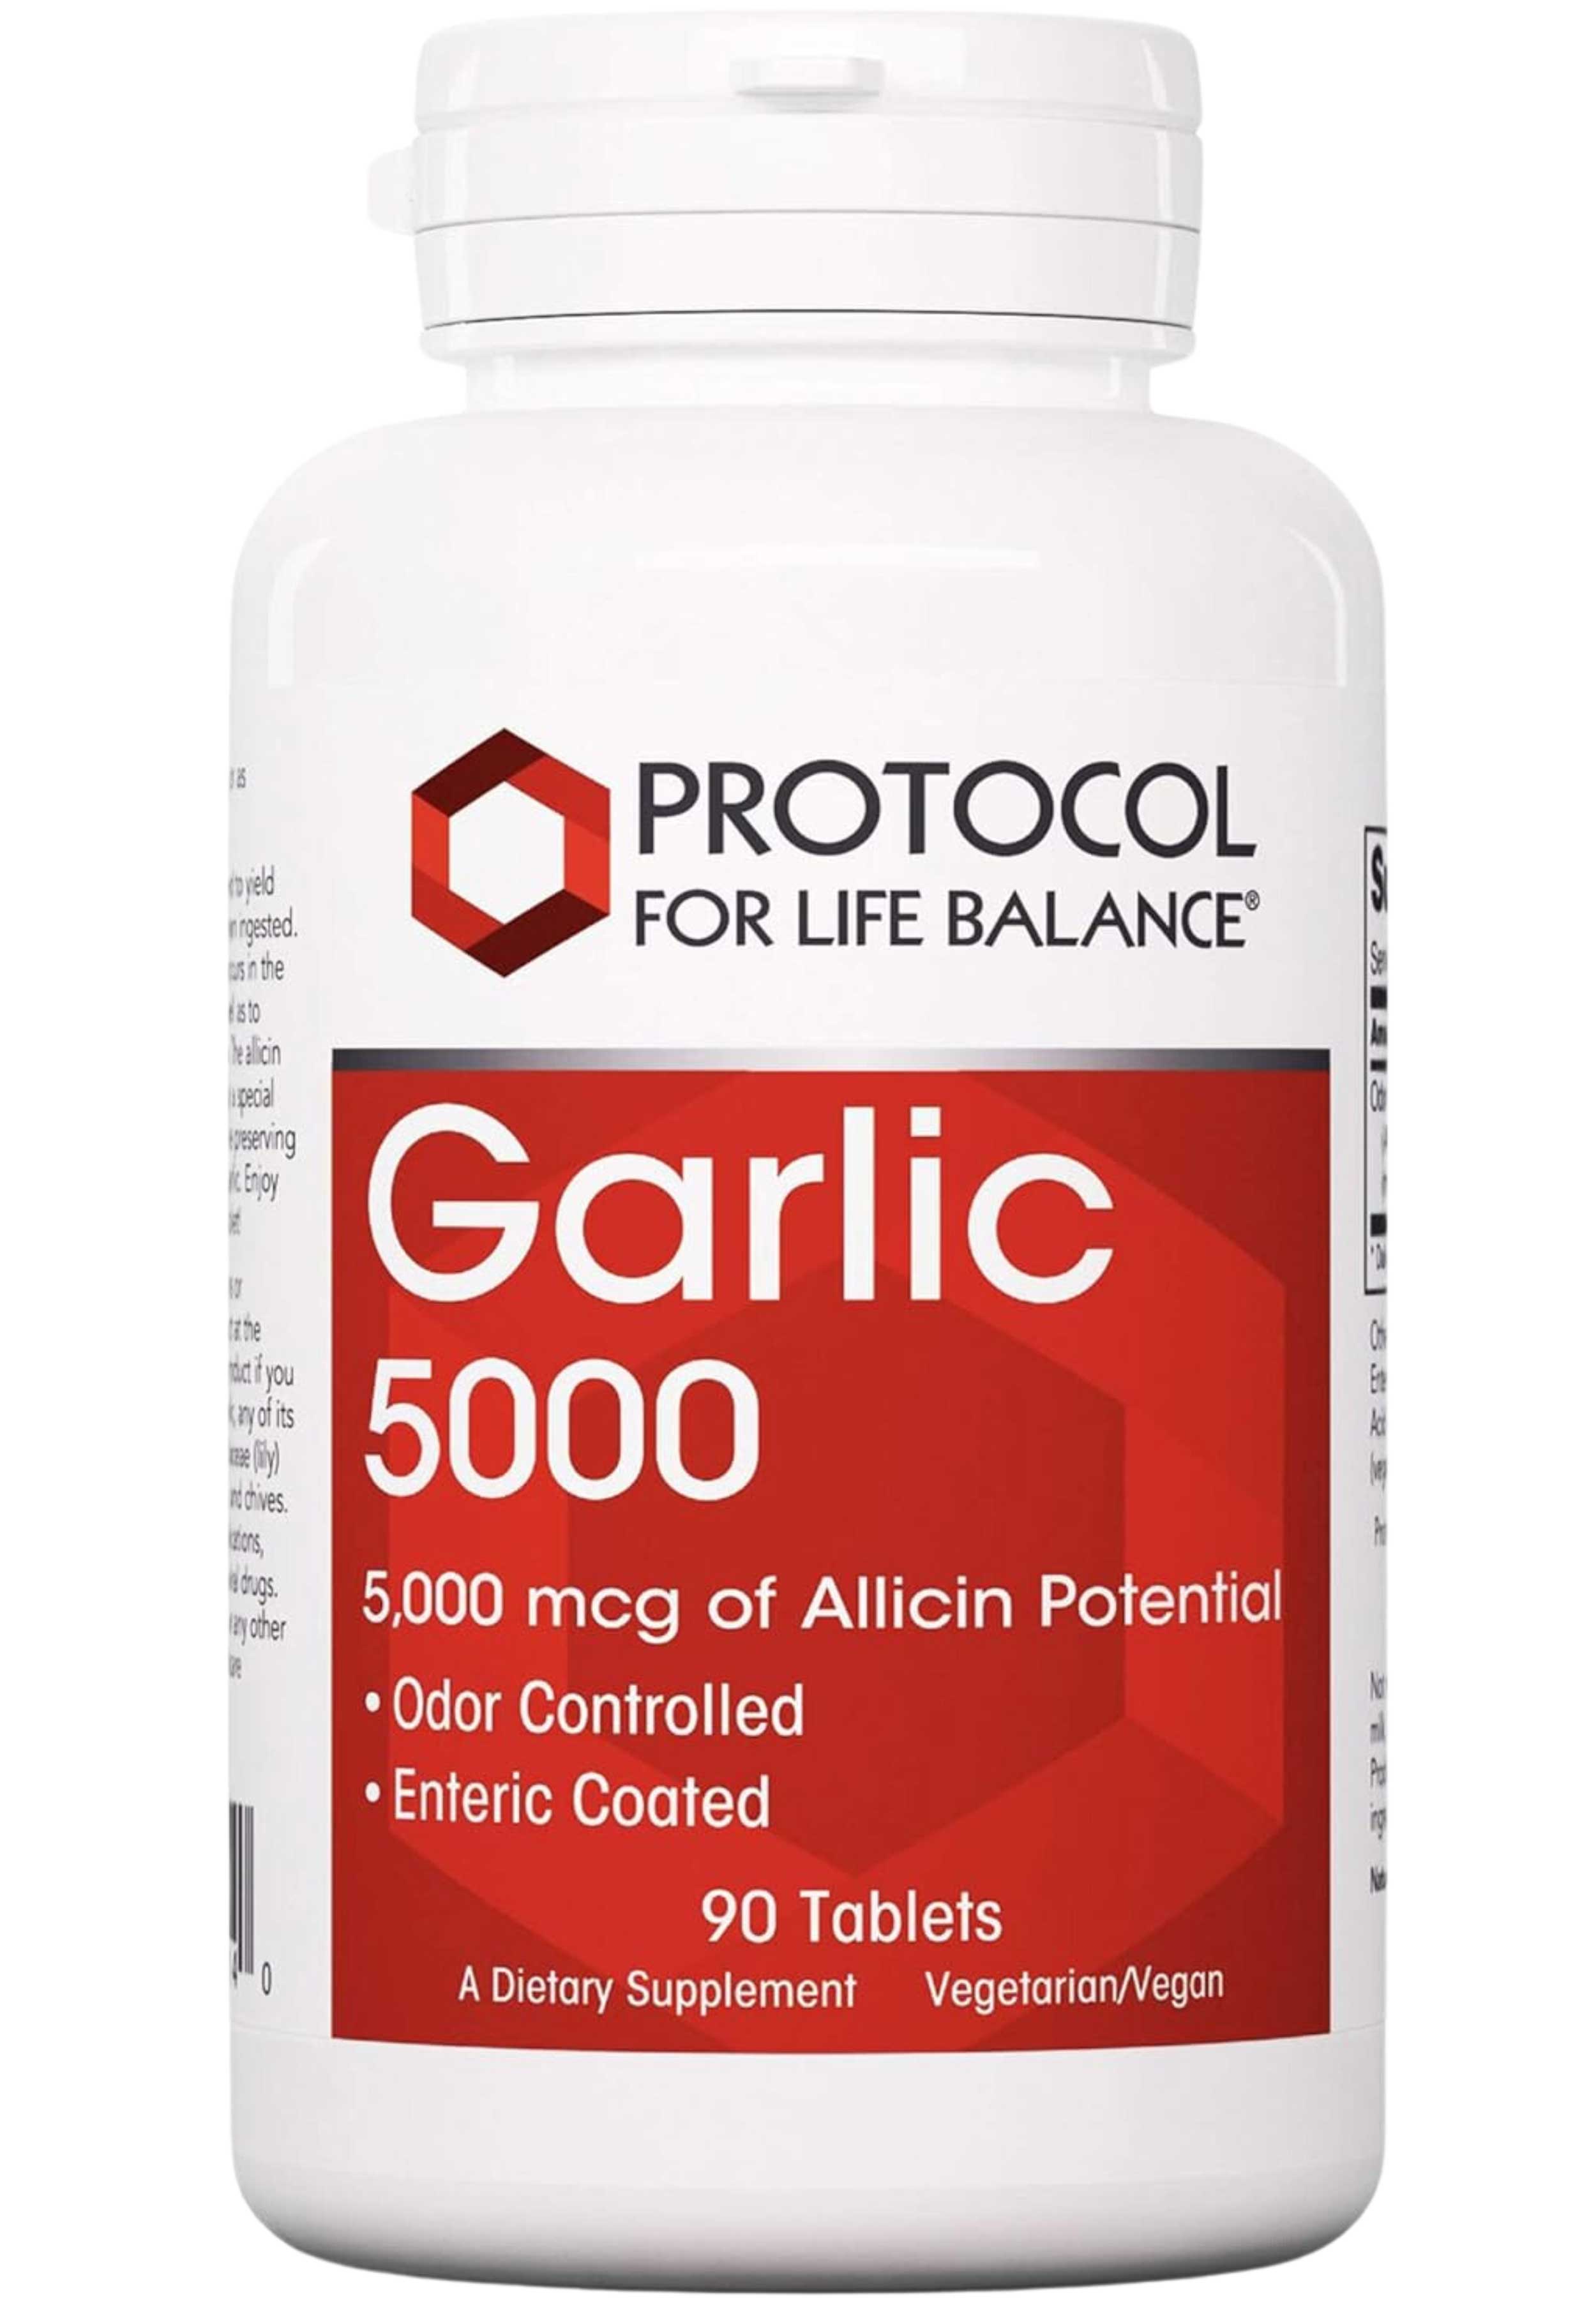 Protocol for Life Balance Garlic 5000